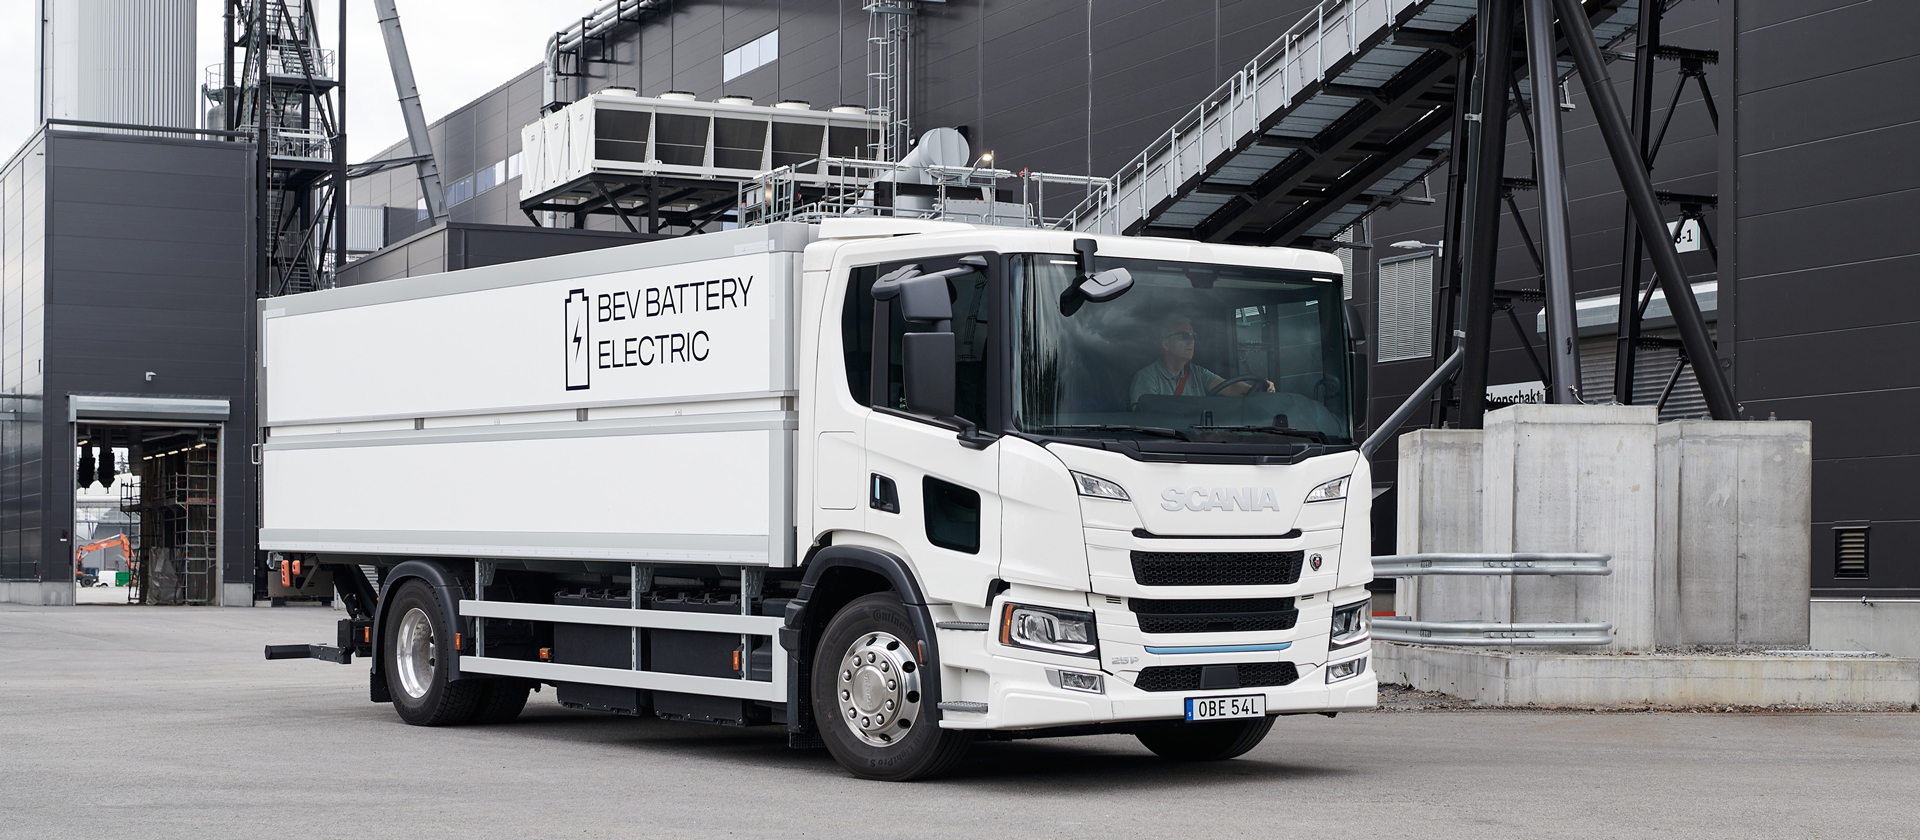 Scania suministrará 5 vehículos eléctricos a batería y 1,6 MW de equipos de carga a un transportista sueco para el sitio público de camiones eléctricos más grande de Suecia